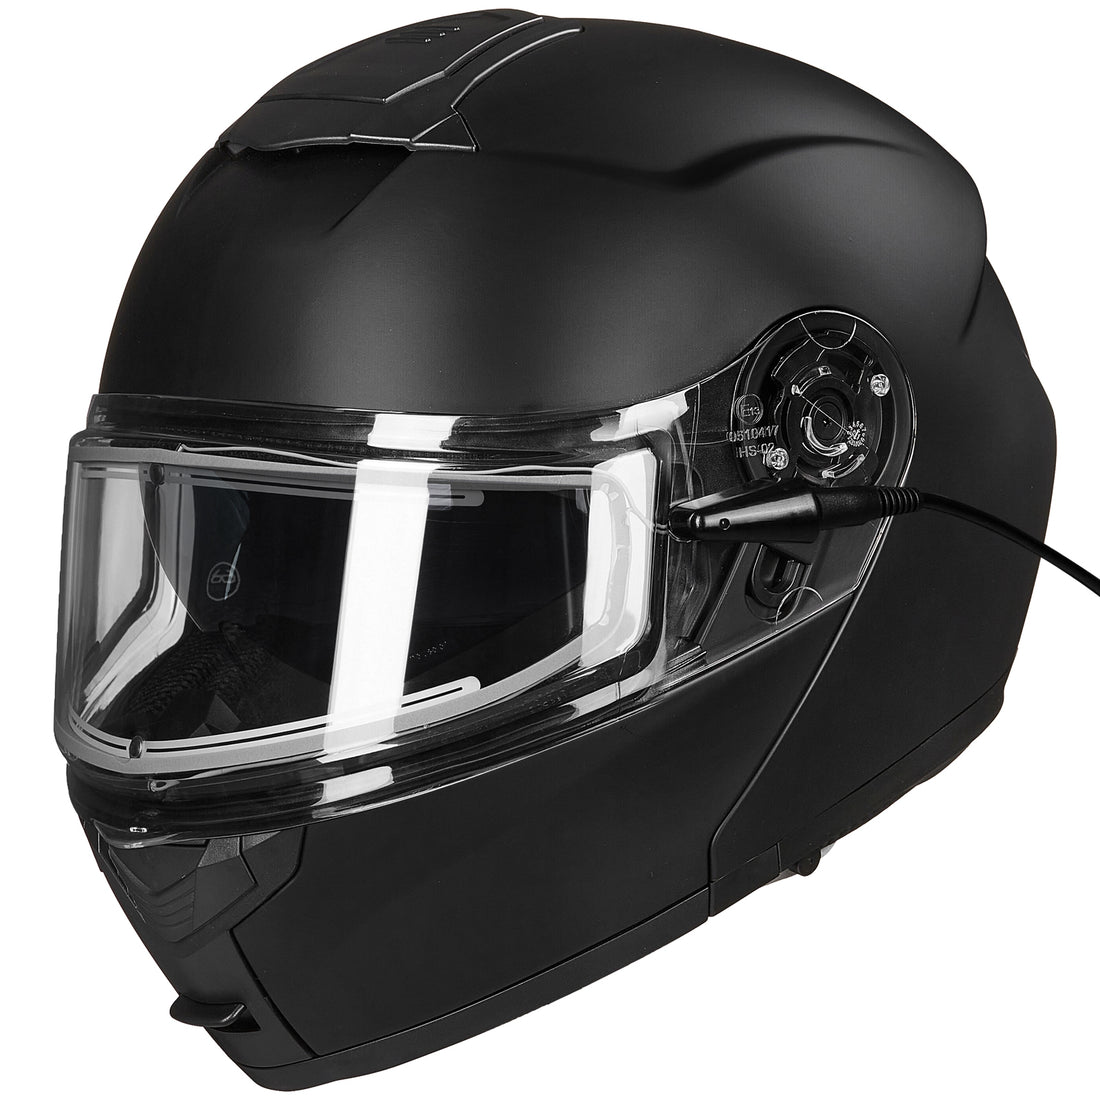 ILM Heated Visor Anti Fog for Model-159 Motocross Snowmobile Snowboard Ski Full Face Motorcycle Helmet(Clear)